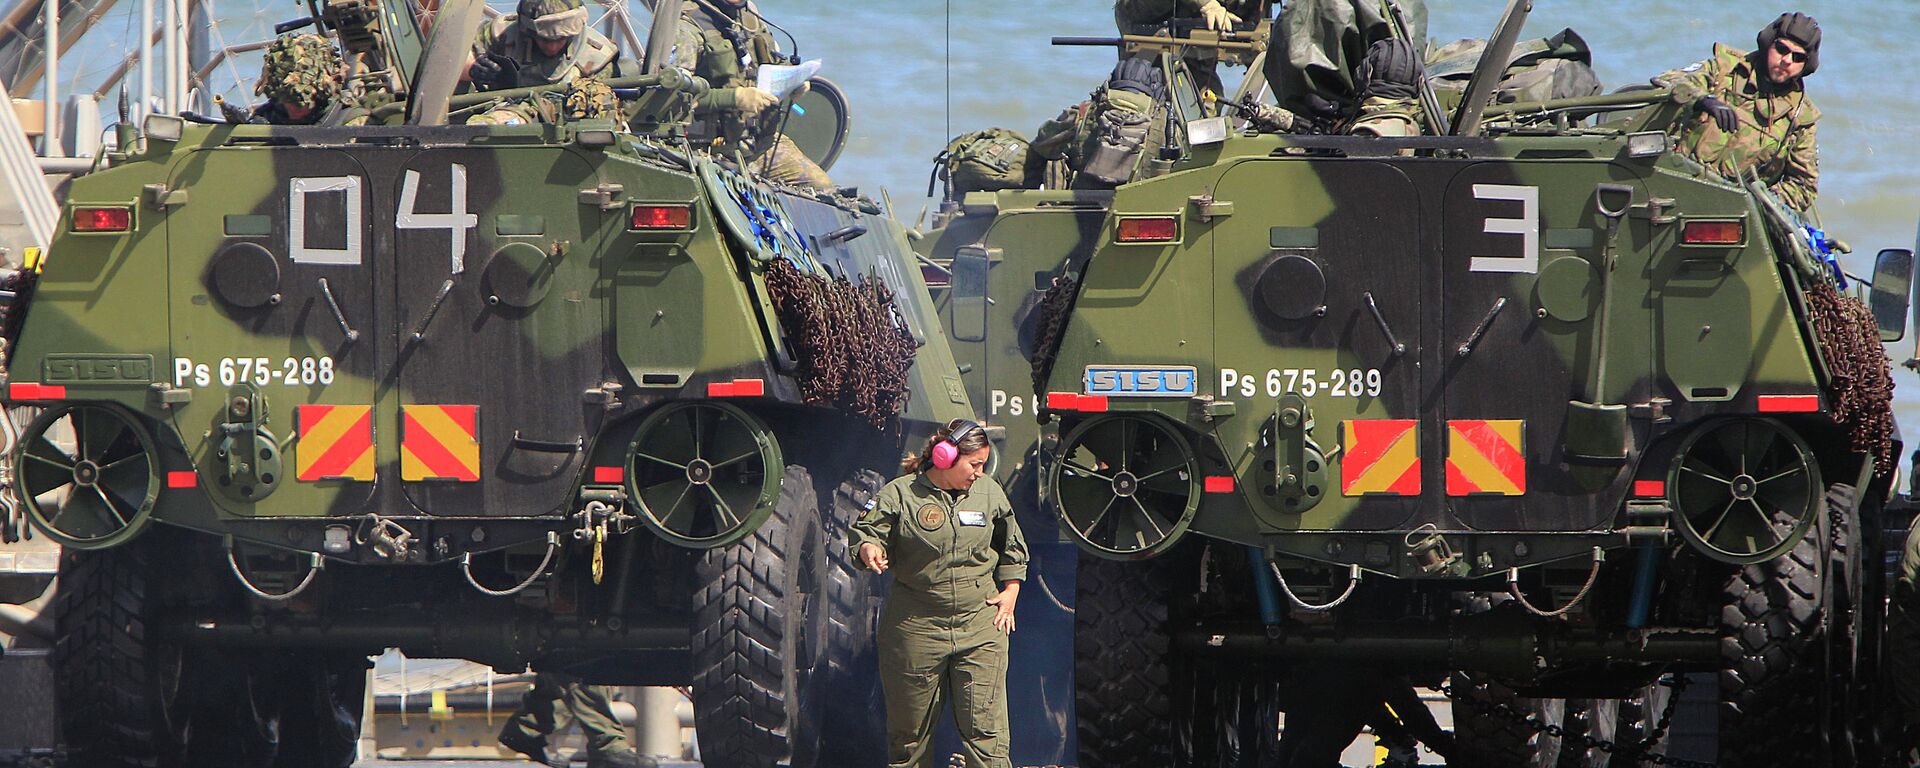 Tropas de la OTAN participan en ejercicios militares en el Mar Báltico, cerca de las fronteras con Rusia. Polonia, 17 de junio de 2015 - Sputnik Mundo, 1920, 16.03.2022